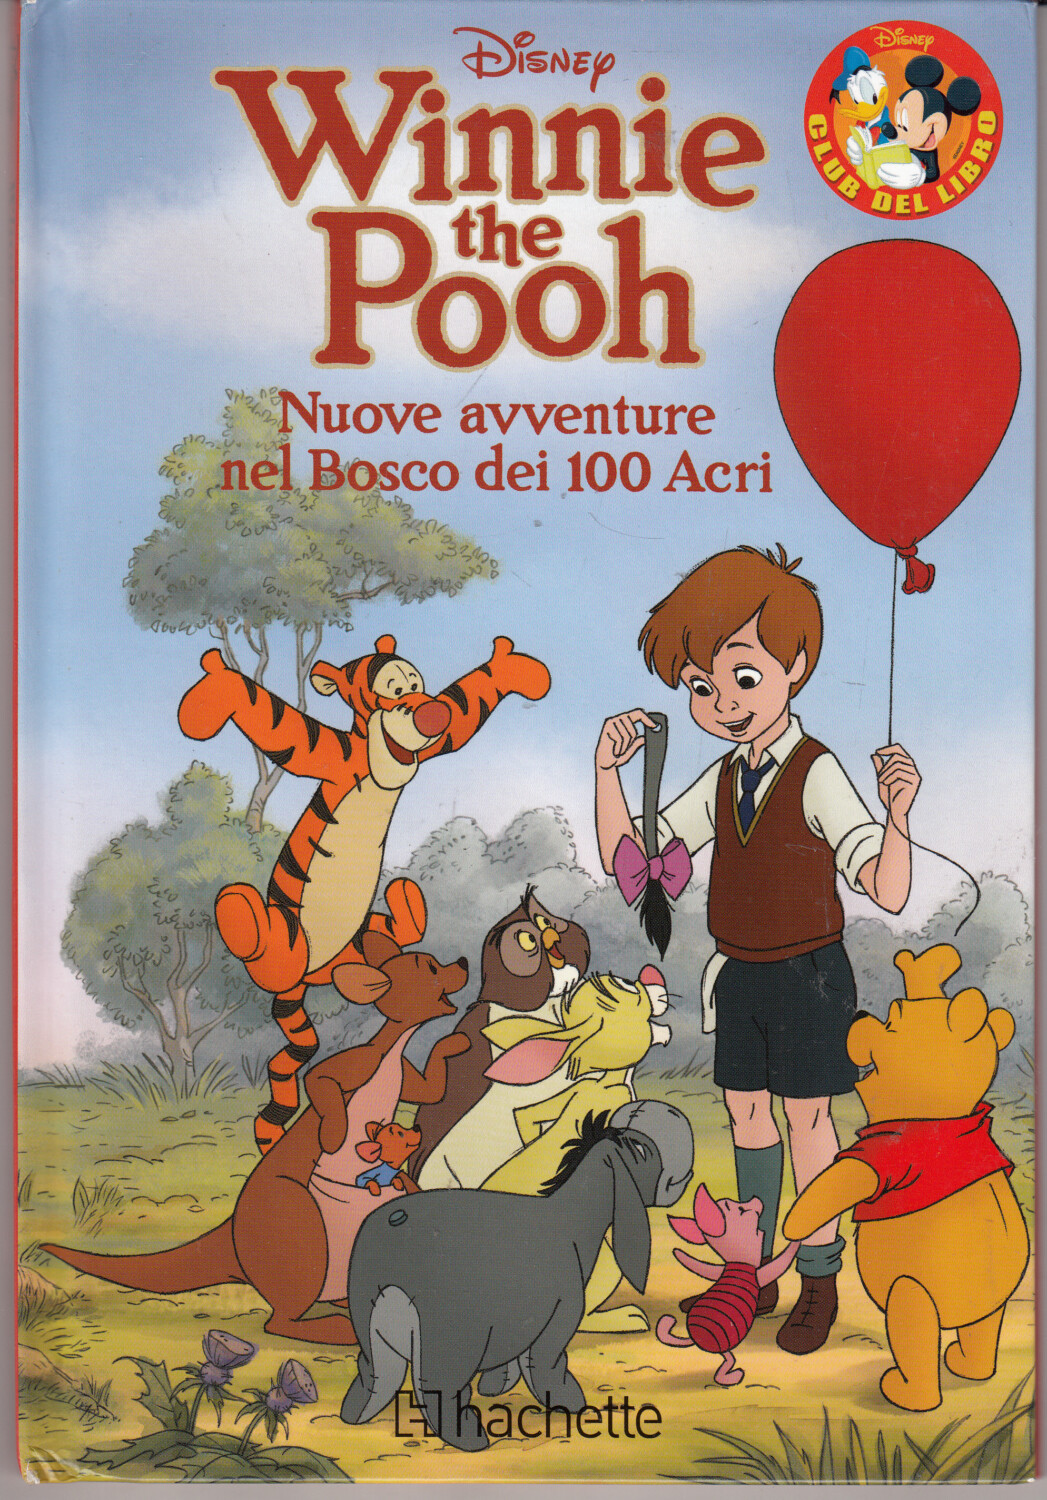 Winnie the Pooh. Nuove avventure nel Bosco dei 100 Acri di Walt Disney. Colla...